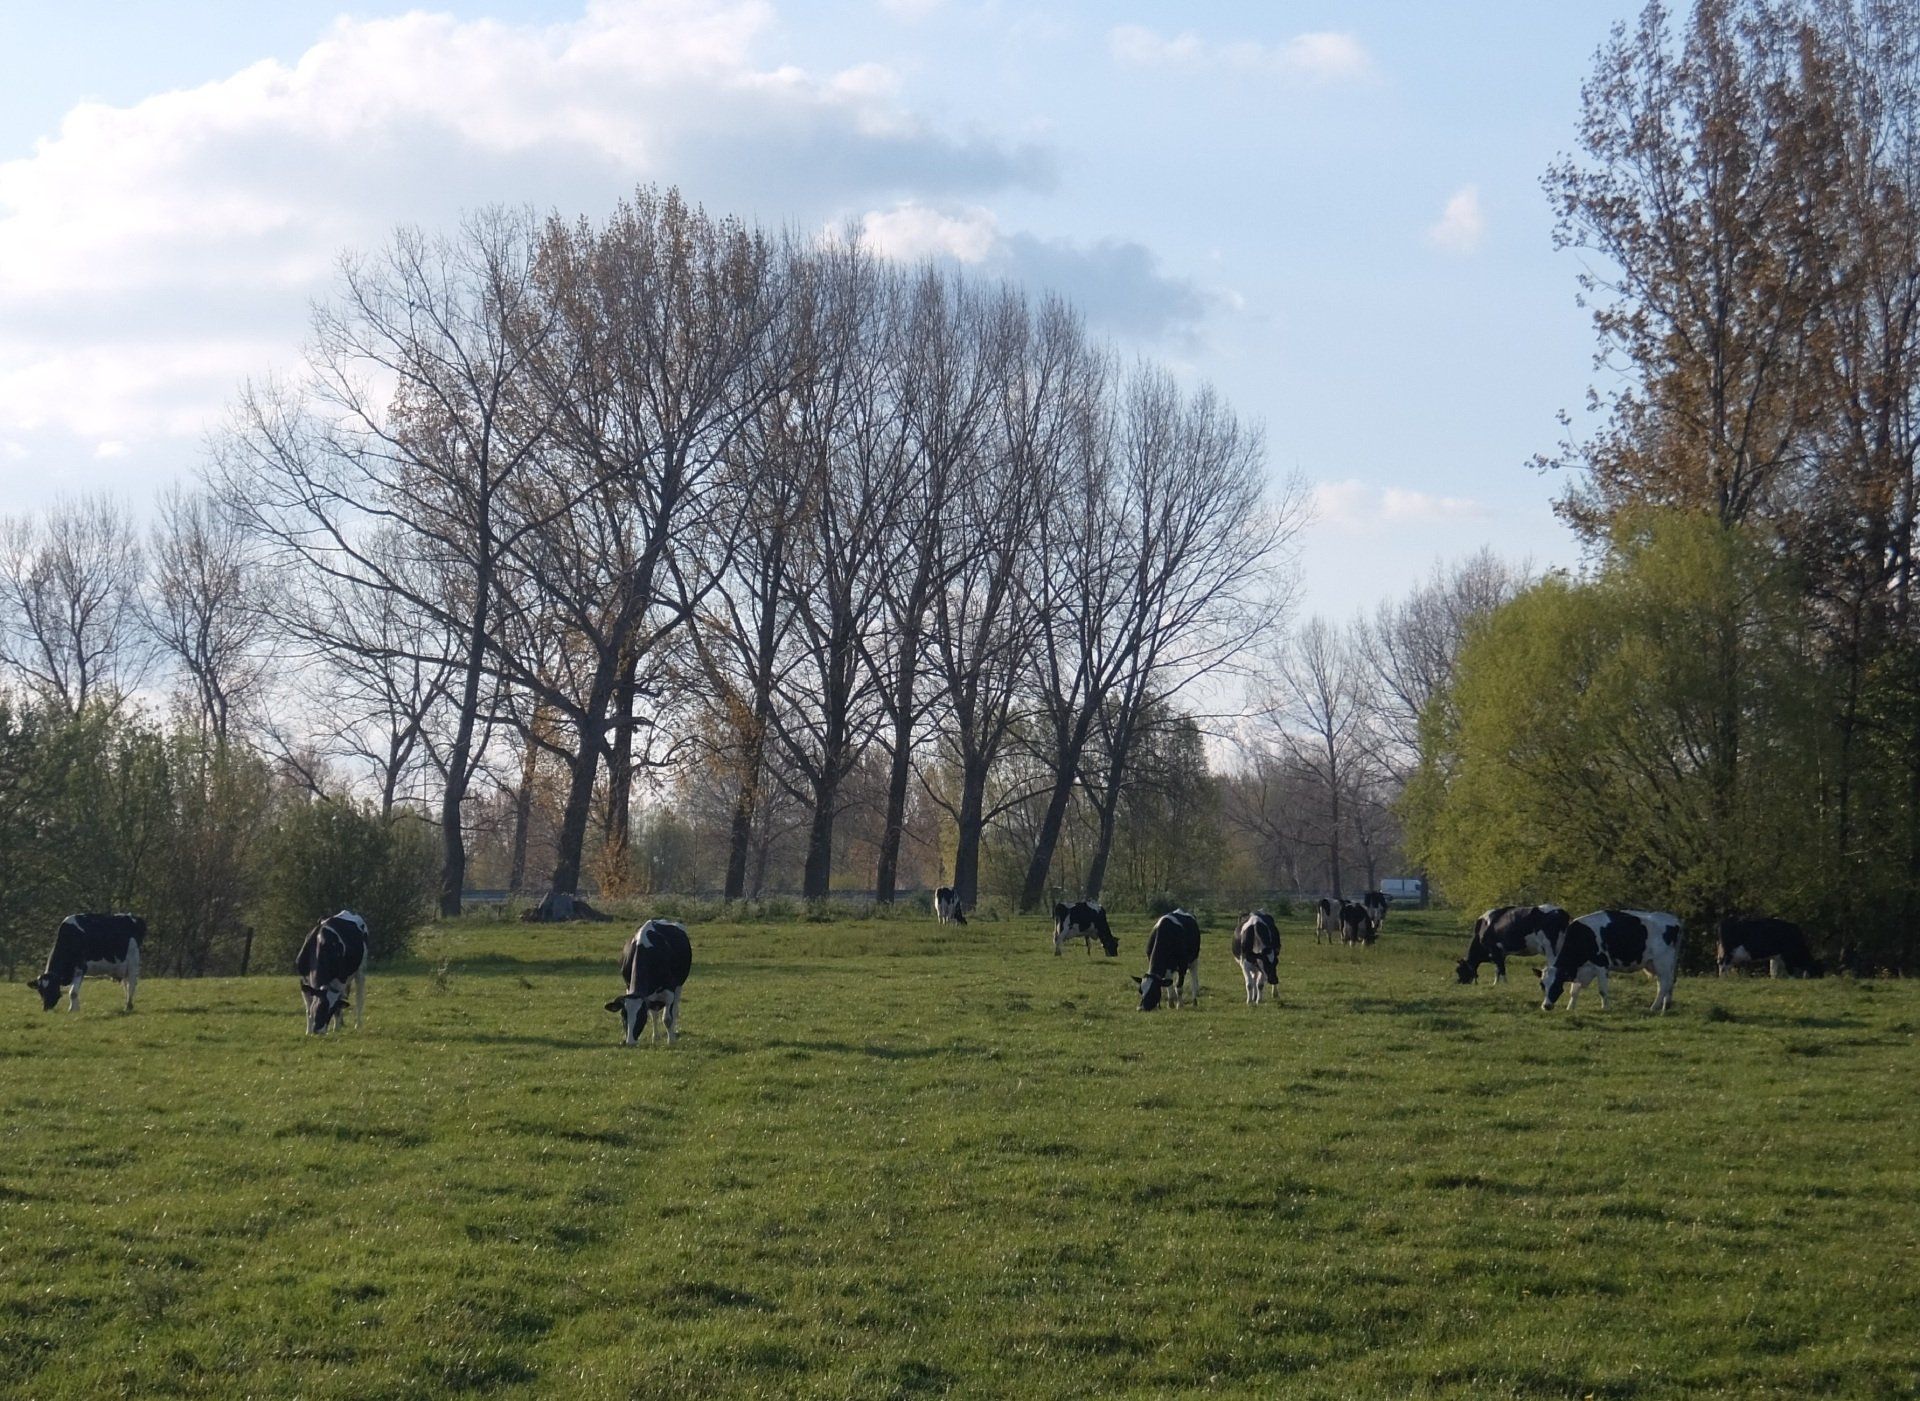 koeien grazen in een wei met bomen rond